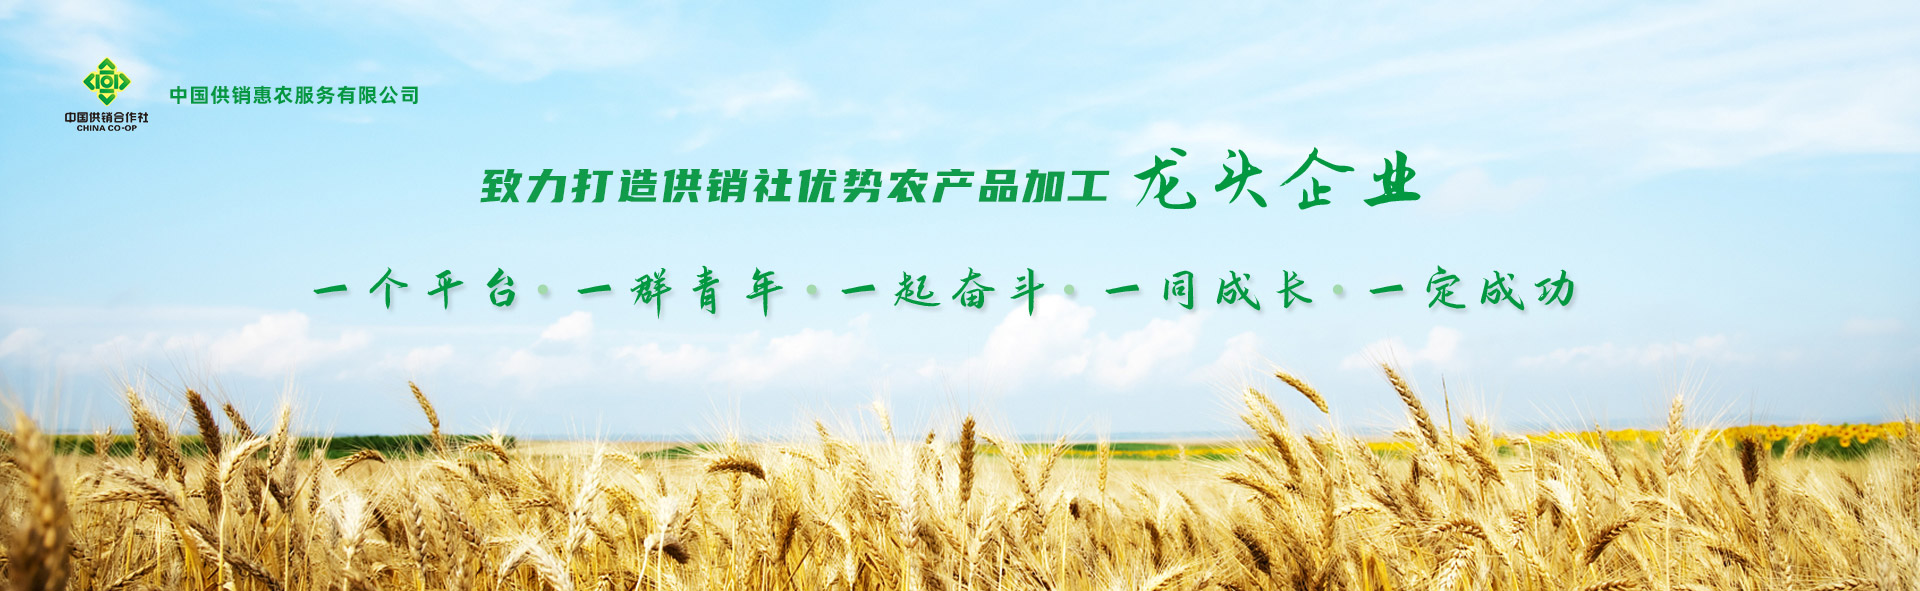 中國供銷惠農服務有限公司